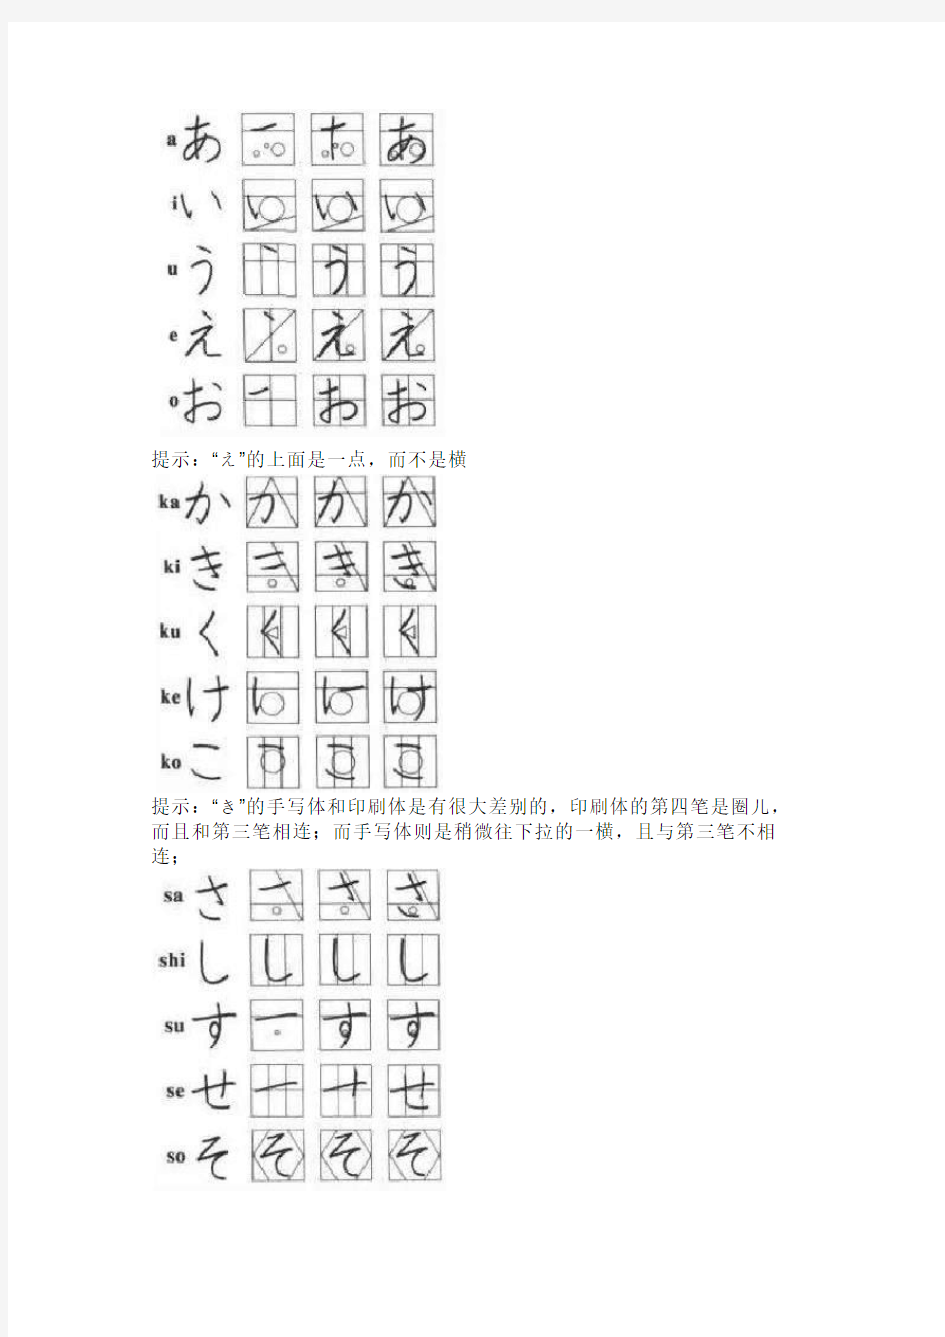 日语五十音图表写法图解